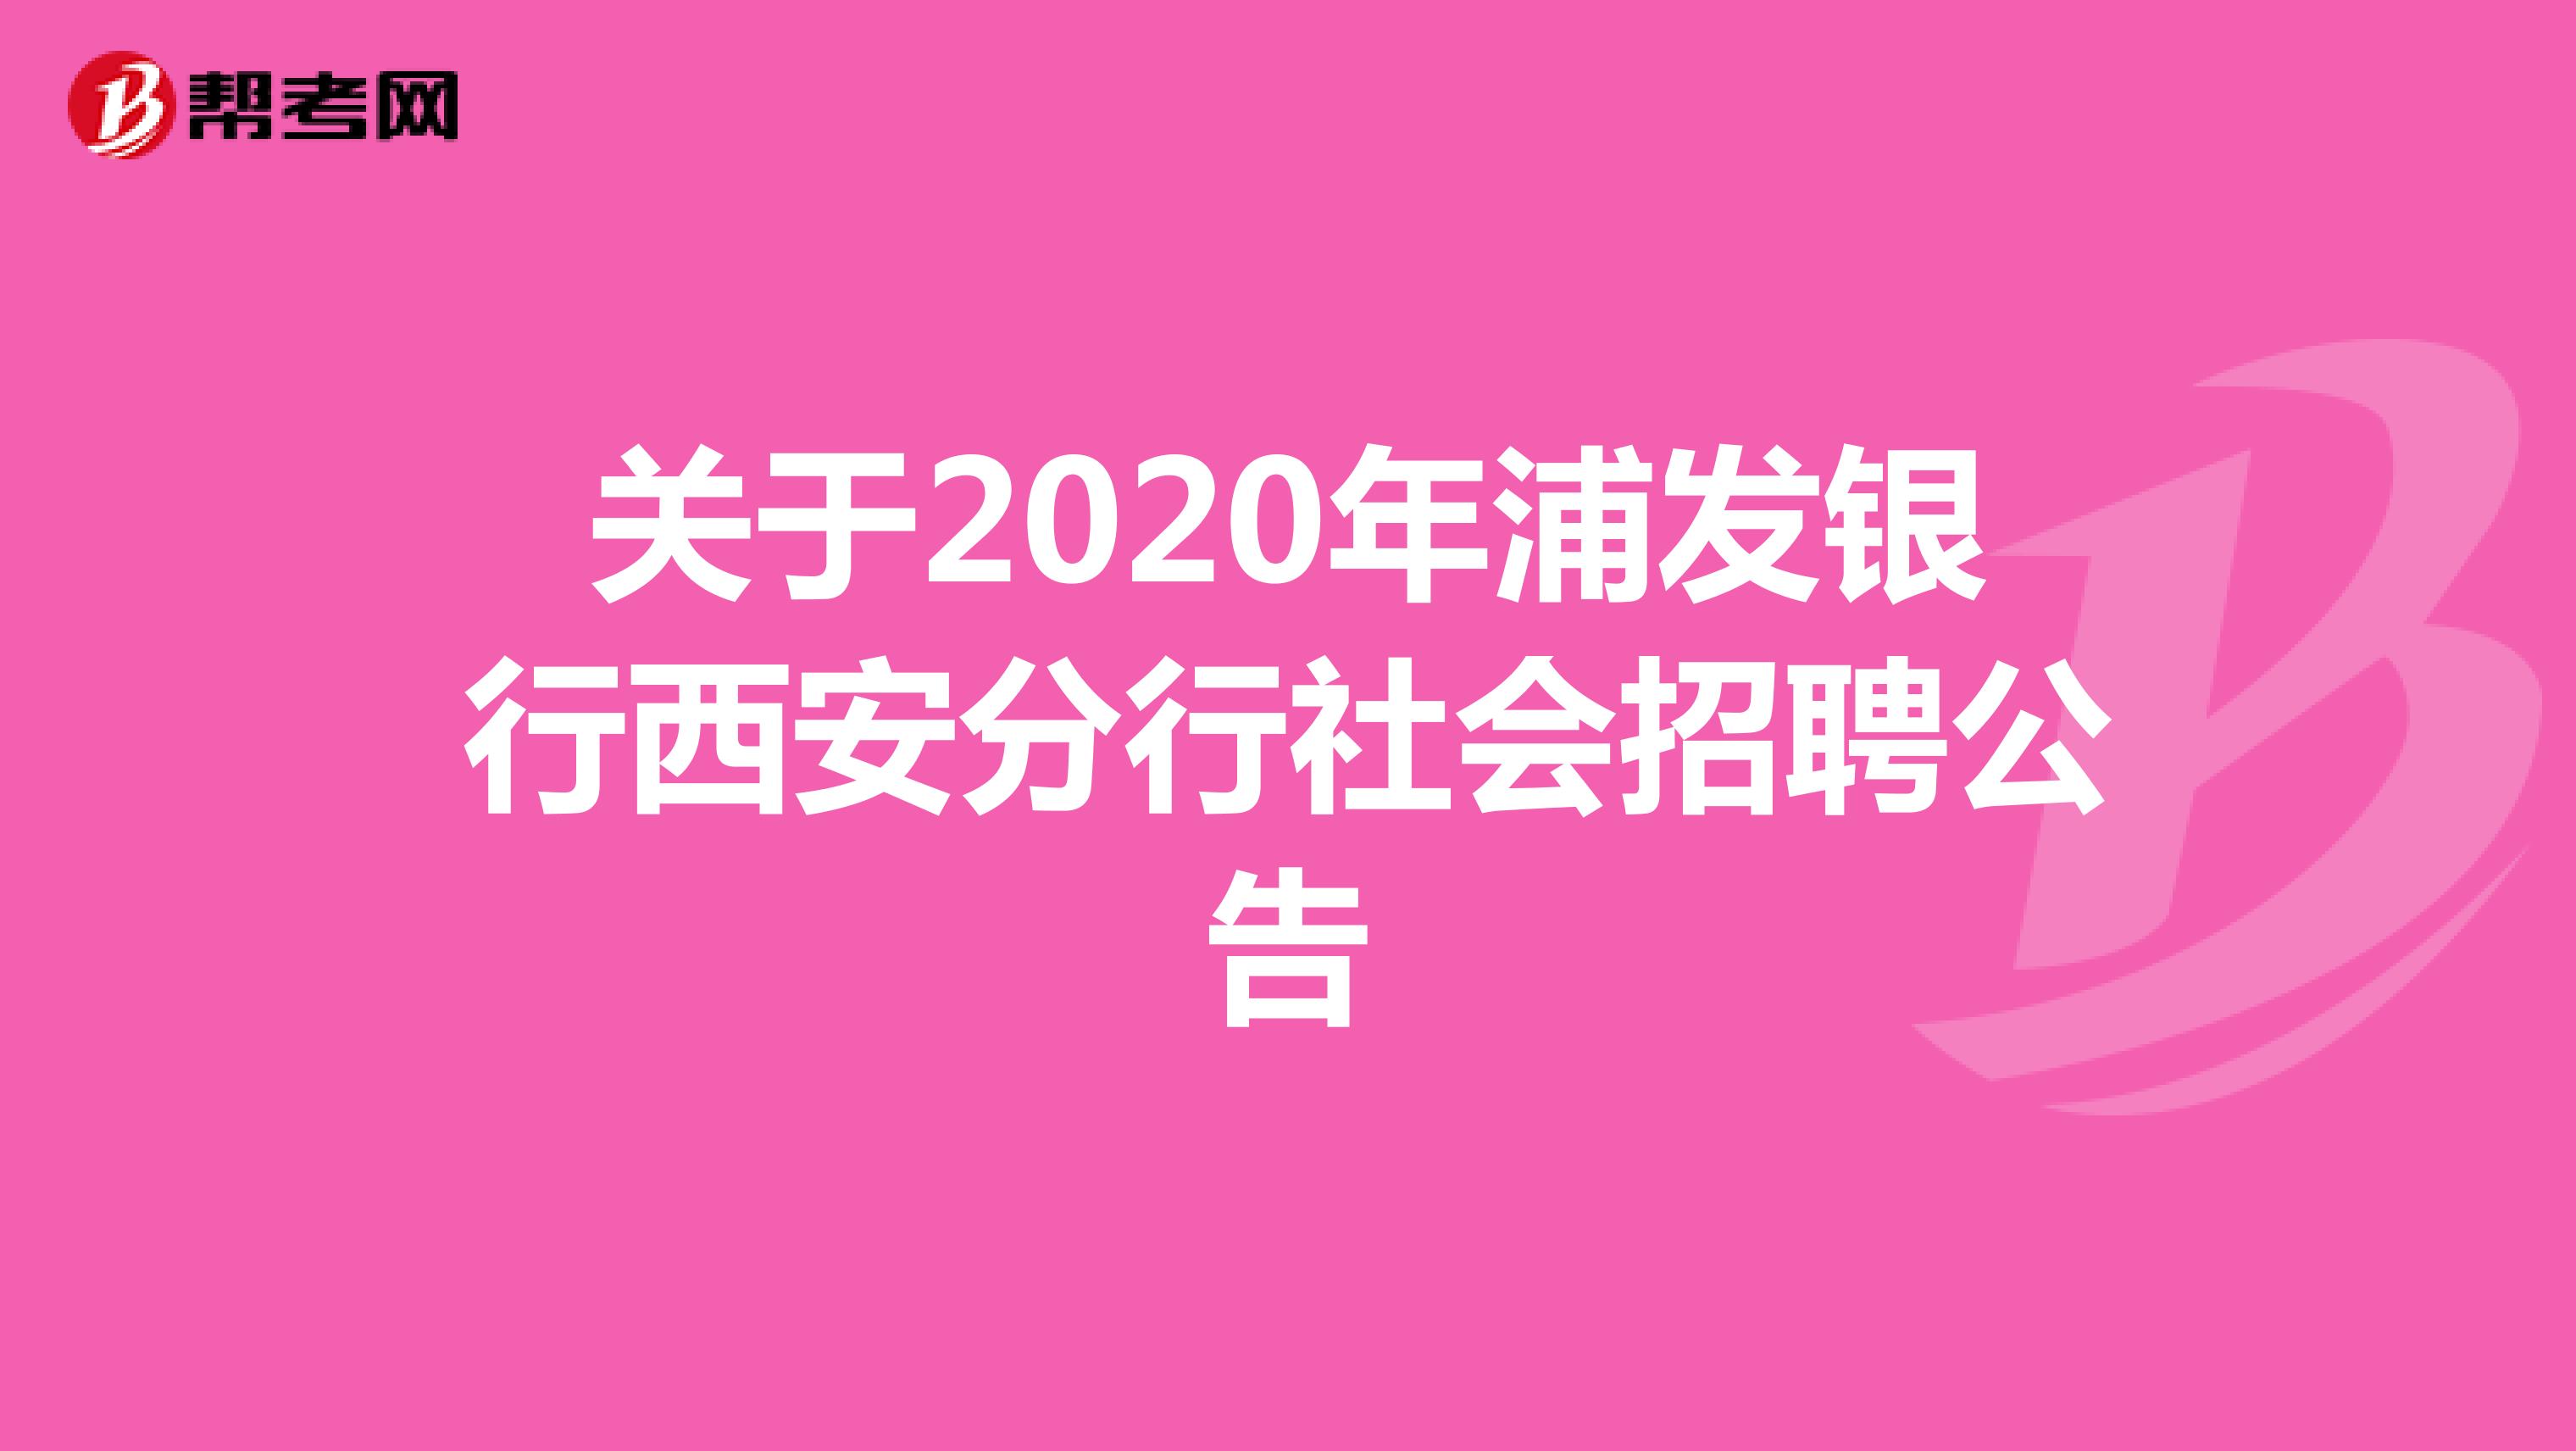 关于2020年浦发银行西安分行社会招聘公告